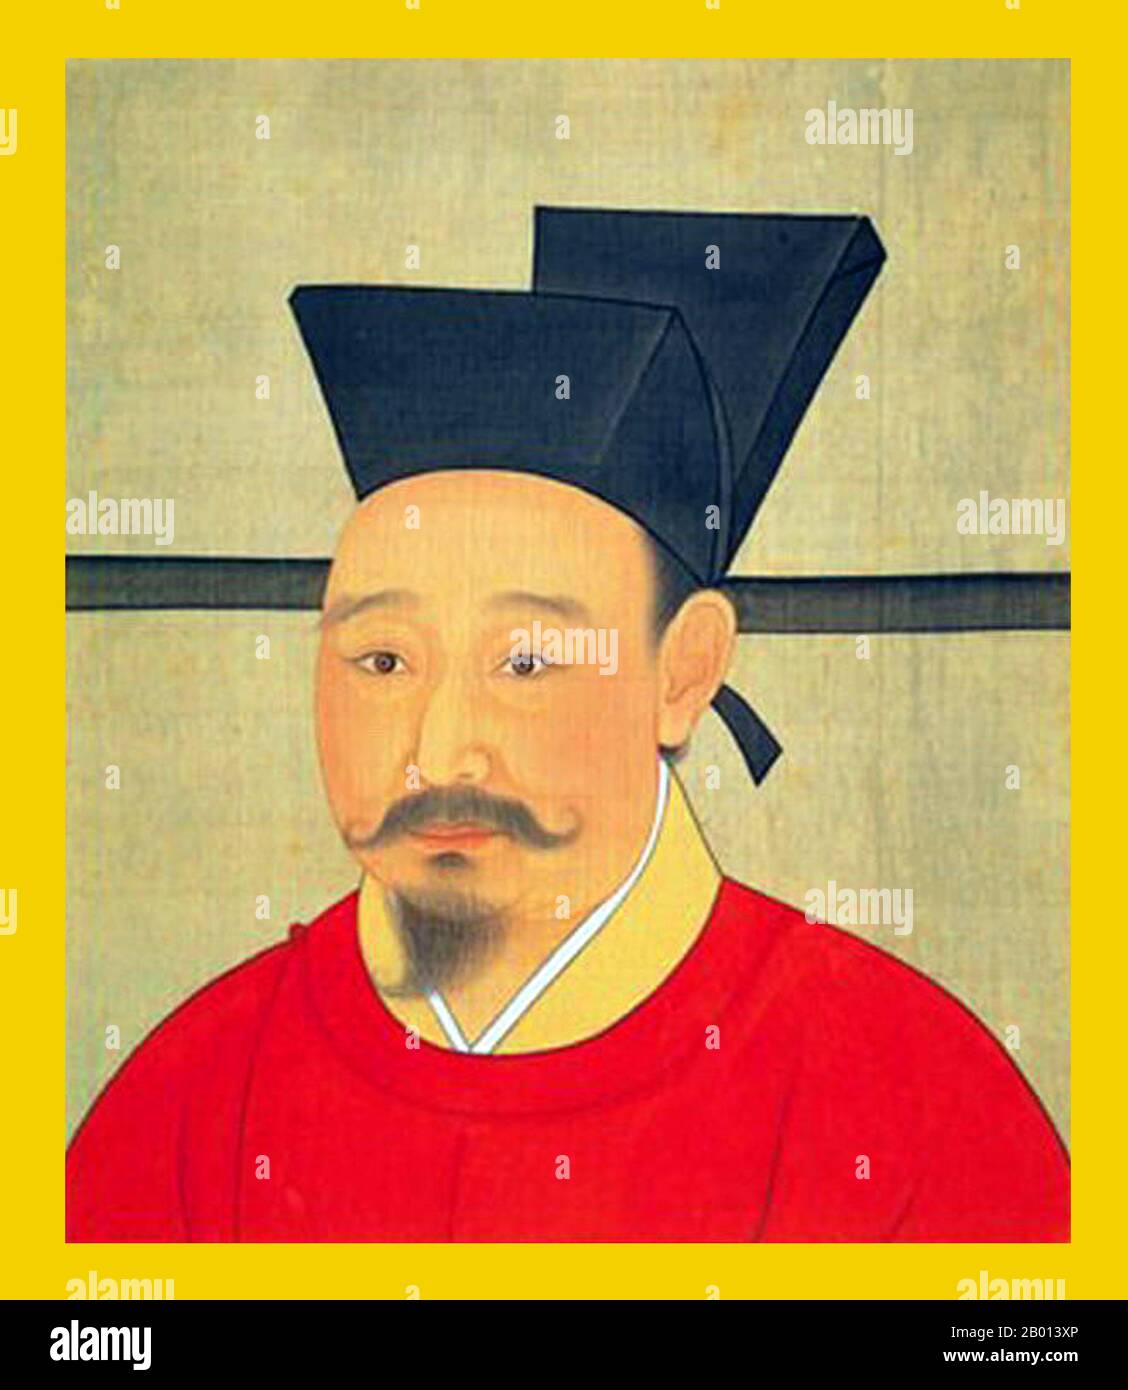 Chine : Empereur Xiaozong (27 novembre 1127 - 28 juin 1194), 11e souverain de la dynastie Song et 2e souverain du chant méridional (r. 1162-1189). Peinture de défilement suspendue, c. 1162-1189. L'empereur Xiaozong, nom personnel Zhao Shen et nom de courtoisie Yuanyong, était le deuxième empereur de la dynastie des Song du Sud. Il s'est monté quand son père adoptif, l'empereur Gaozong, a abdiqué, bien qu'il soit resté de facto le dirigeant avec son statut de 'Taishan Huang' ('Empereur retraité'). Xiaozong n'a pas pris le relais jusqu'à la mort de l'empereur Gaozong en 1187. Il s'abdiqua en 1189 et devint également 'Taishang Huang'. Banque D'Images